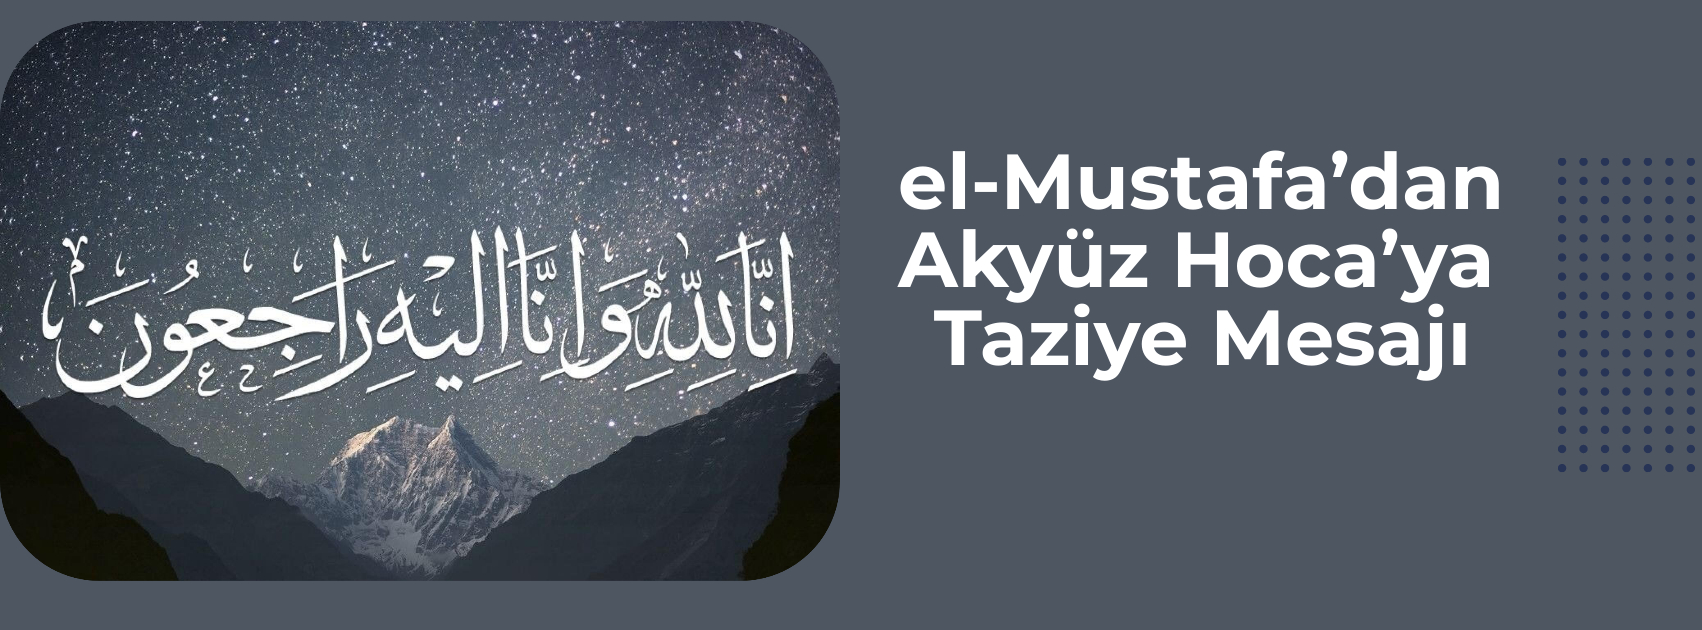 el-Mustafa’dan Akyüz Hoca’ya Taziye Mesajı